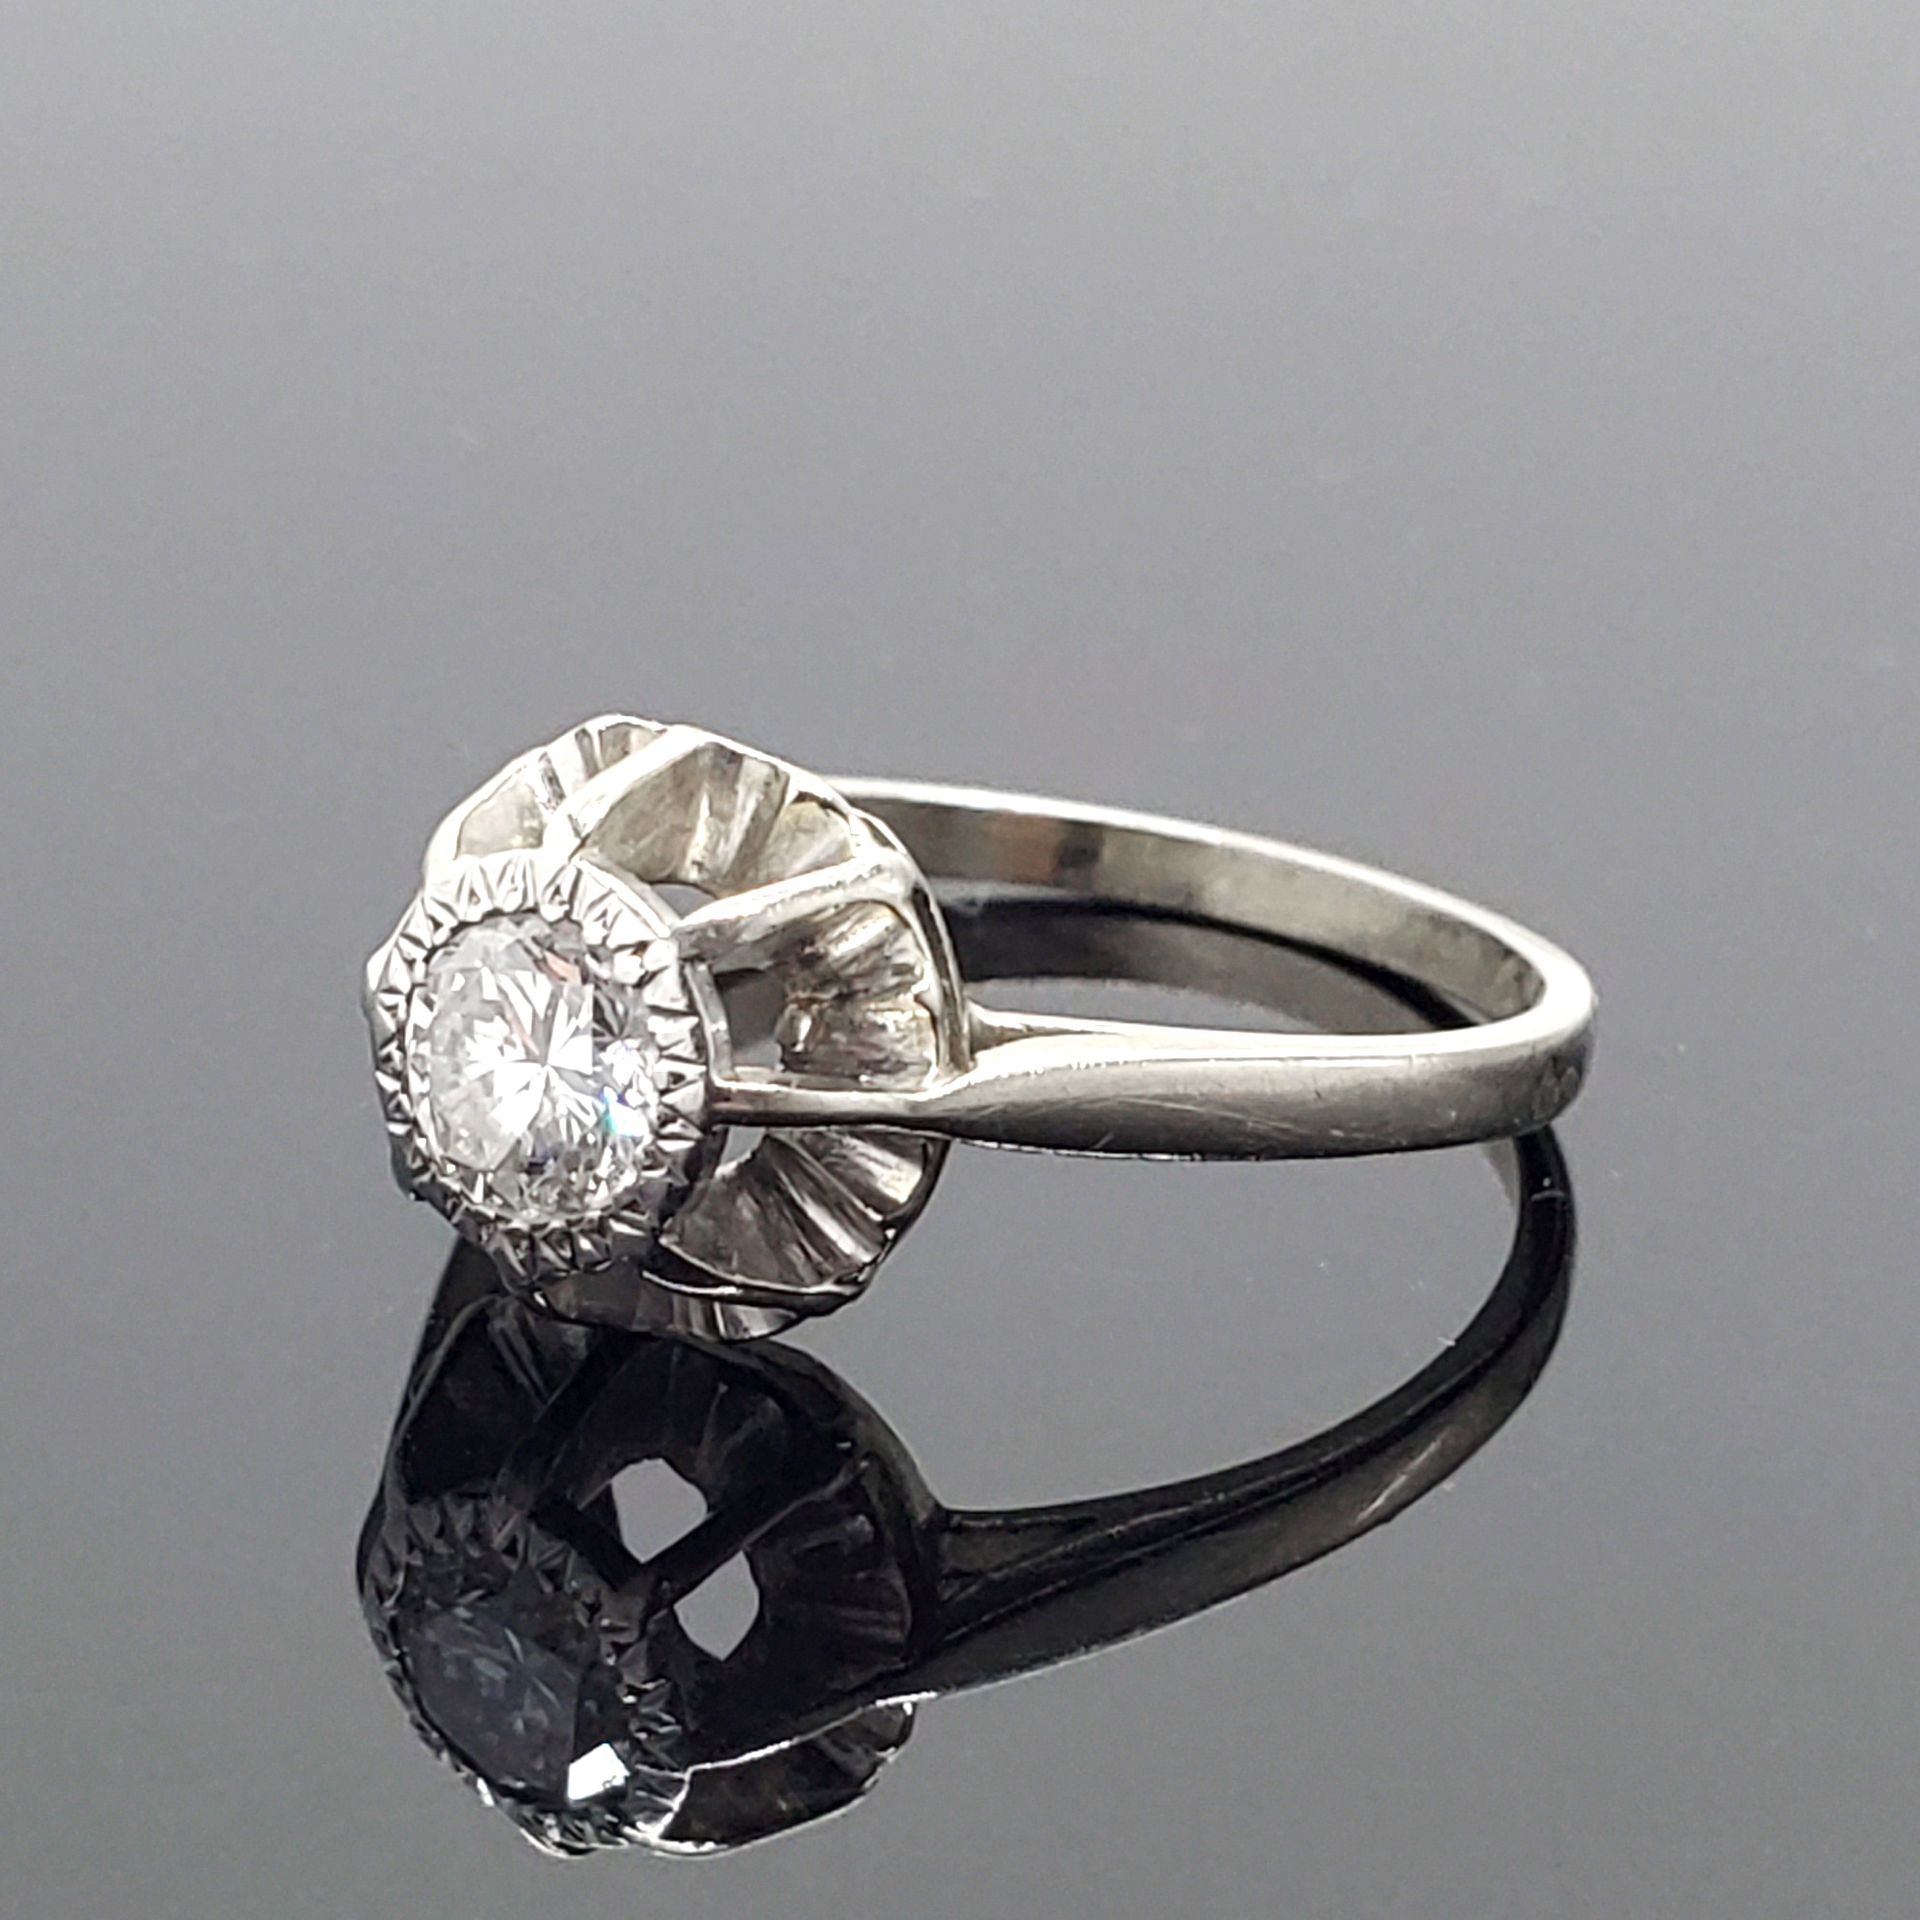 Null 750密耳白金戒指，镶有单颗老式切割钻石。毛重3.9克。钻石大小约0.75克拉。TDD 58